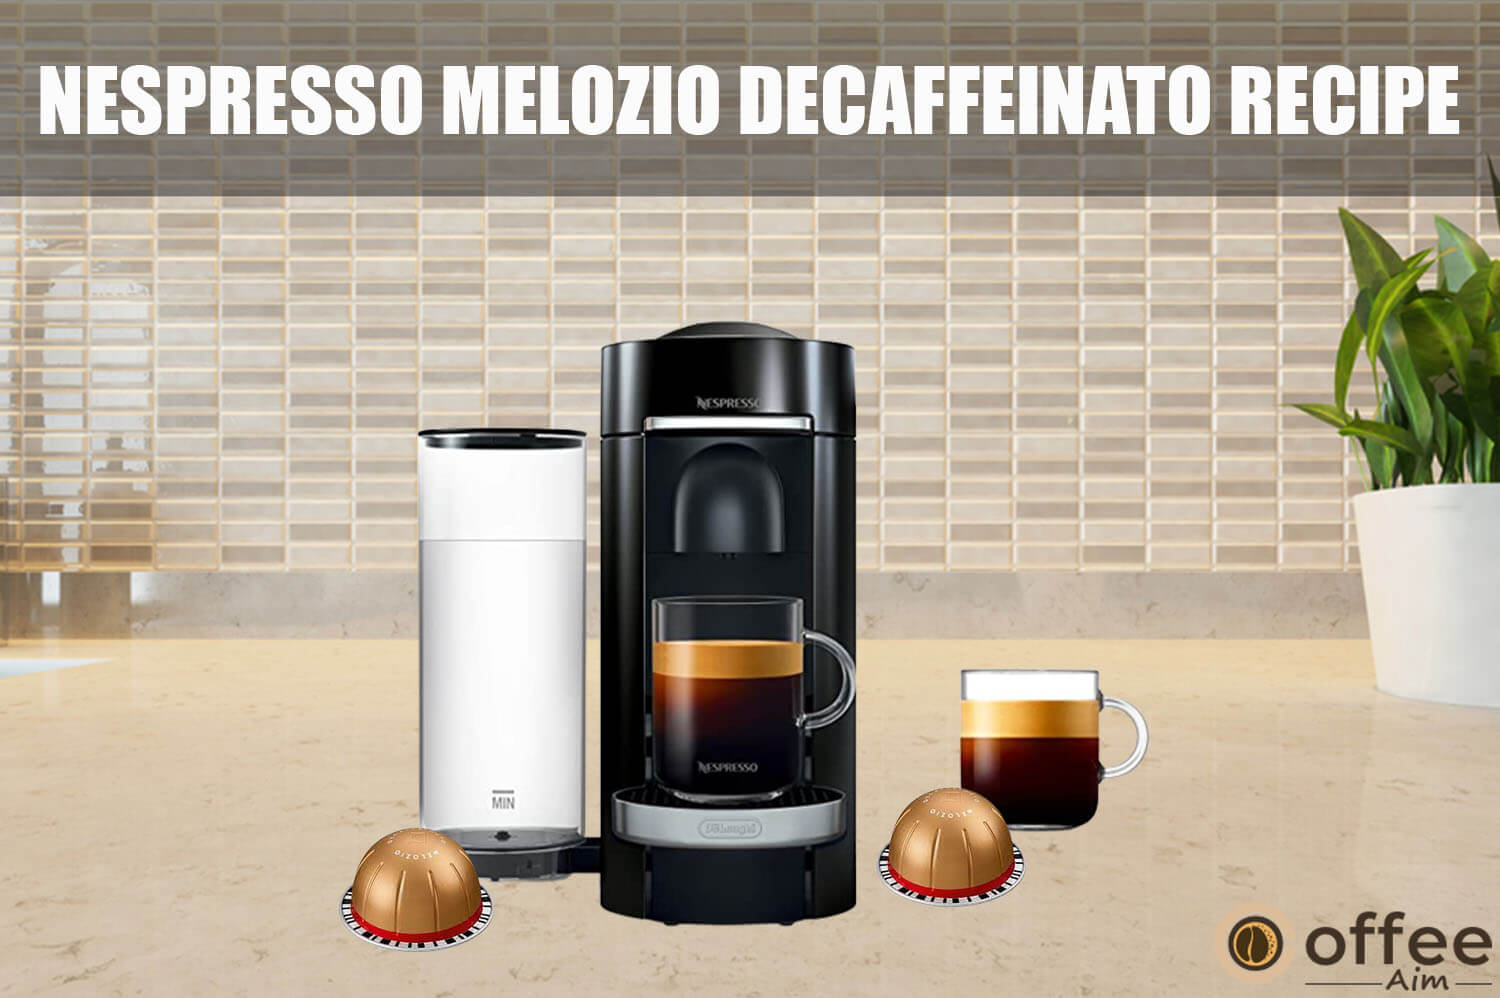 Featured image for the article "Nespresso Melozio Decaffeinato Recipe"